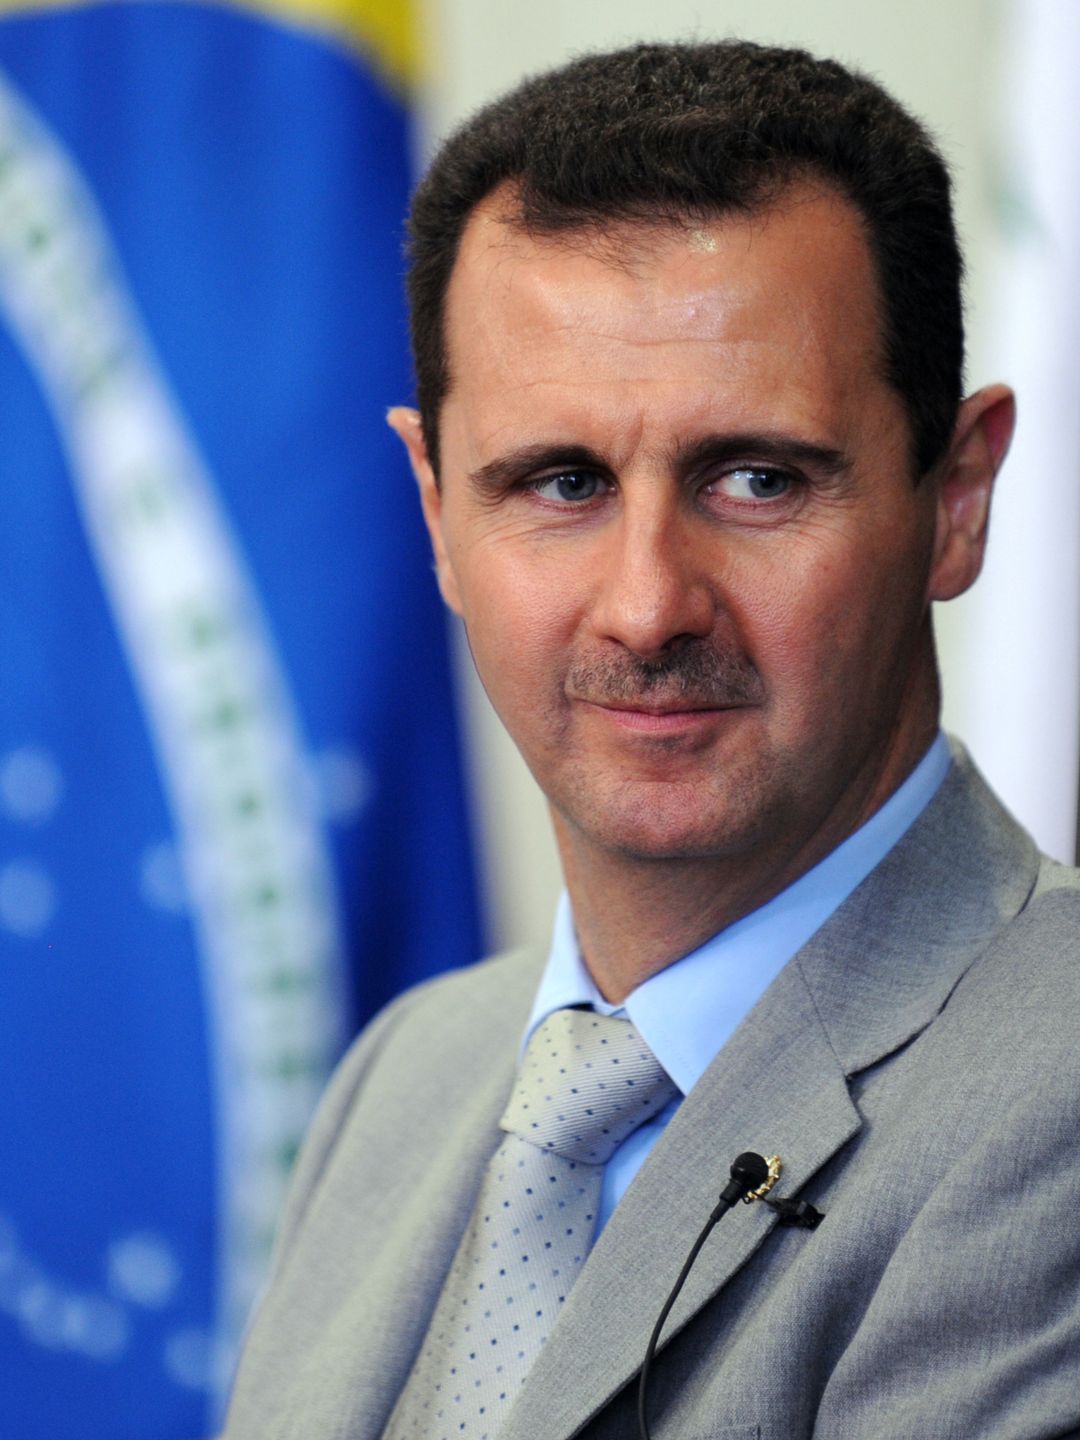 Bashar Assad young pics